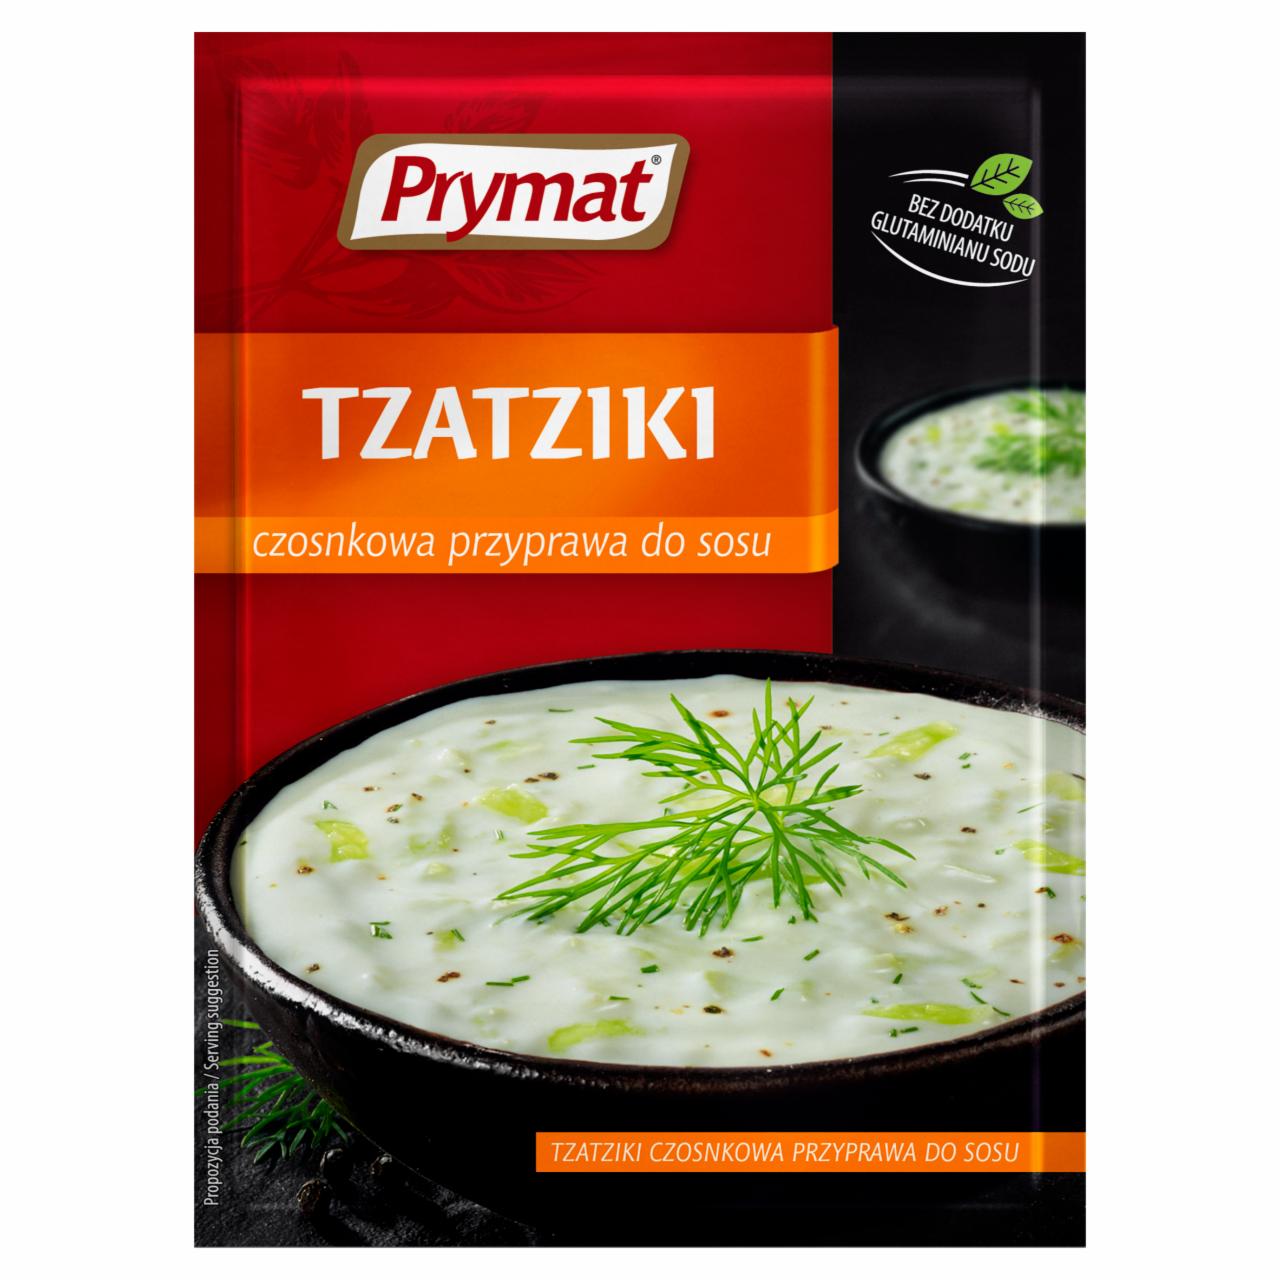 Zdjęcia - Prymat Przyprawa do sosu tzatziki klasyczna 20 g